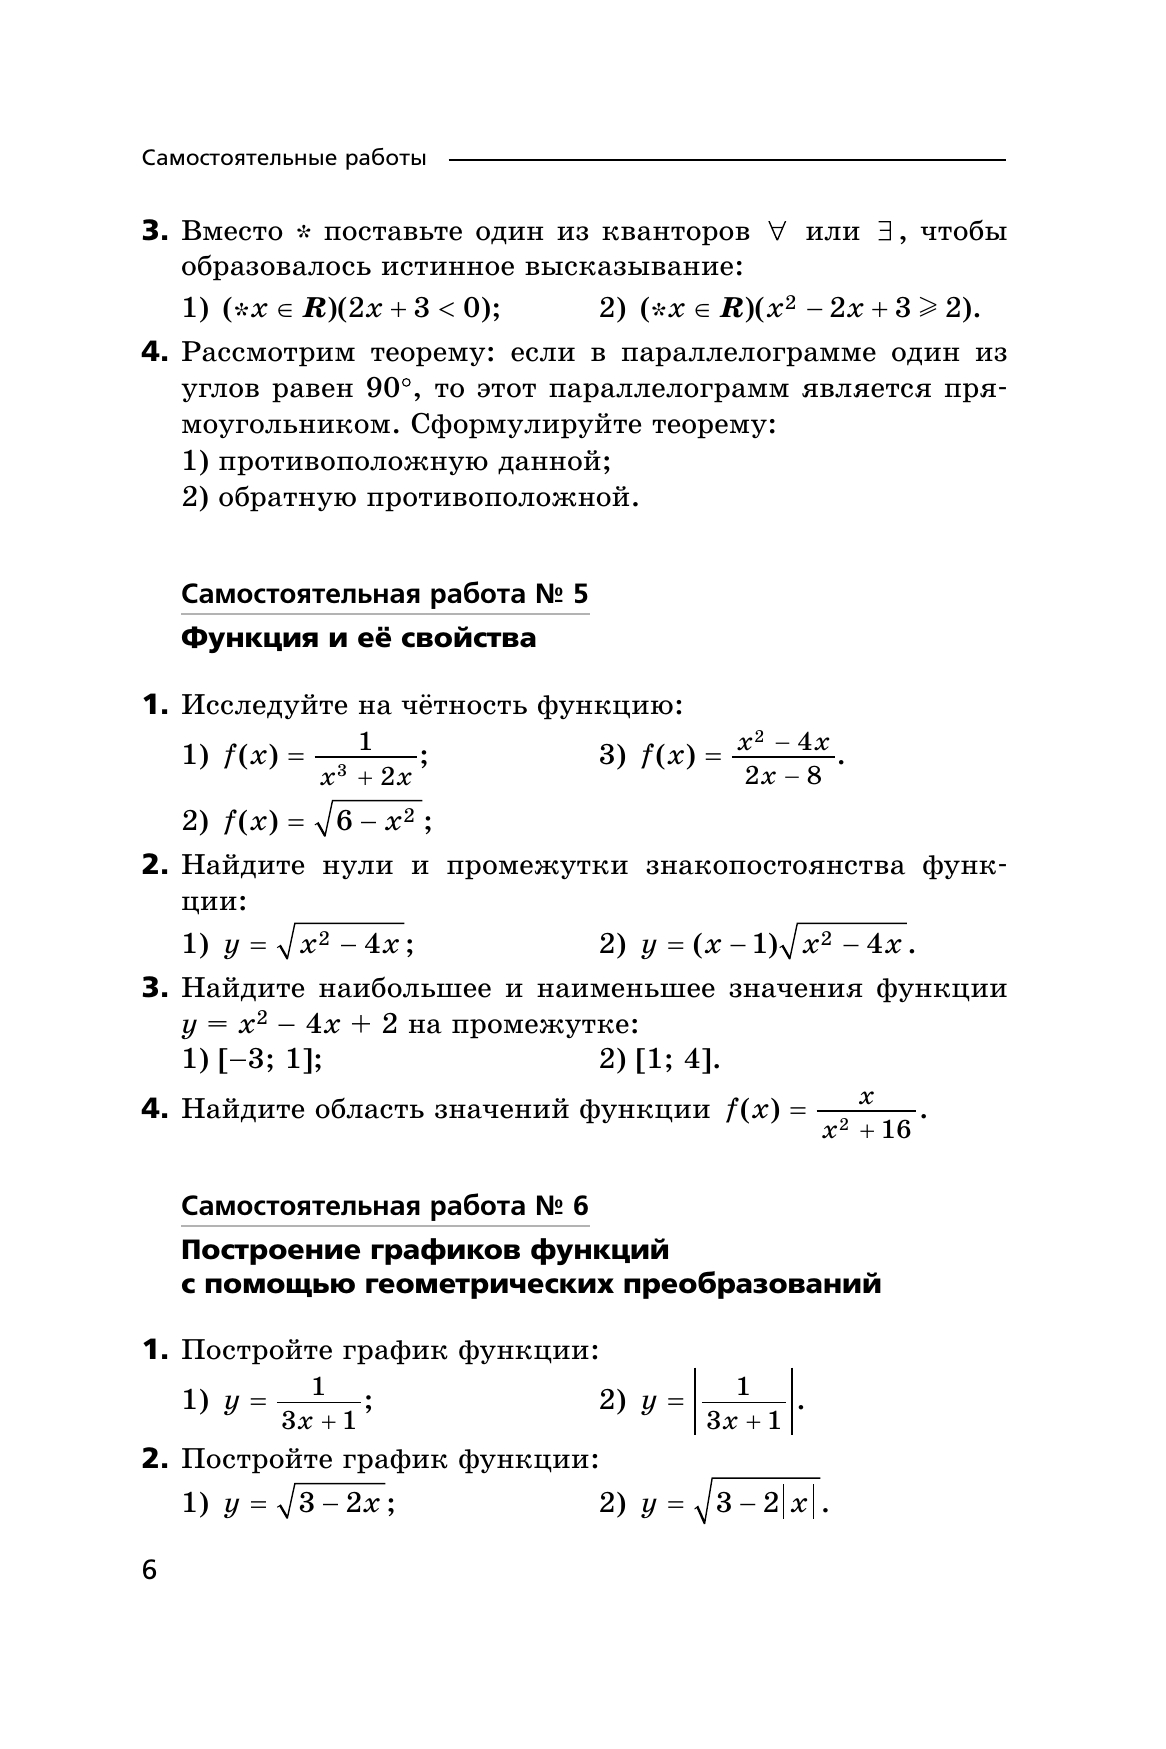 Алгебра и начала математического анализа. 10 класс. Самостоятельные и контрольные работы (углубленный уровень) 10